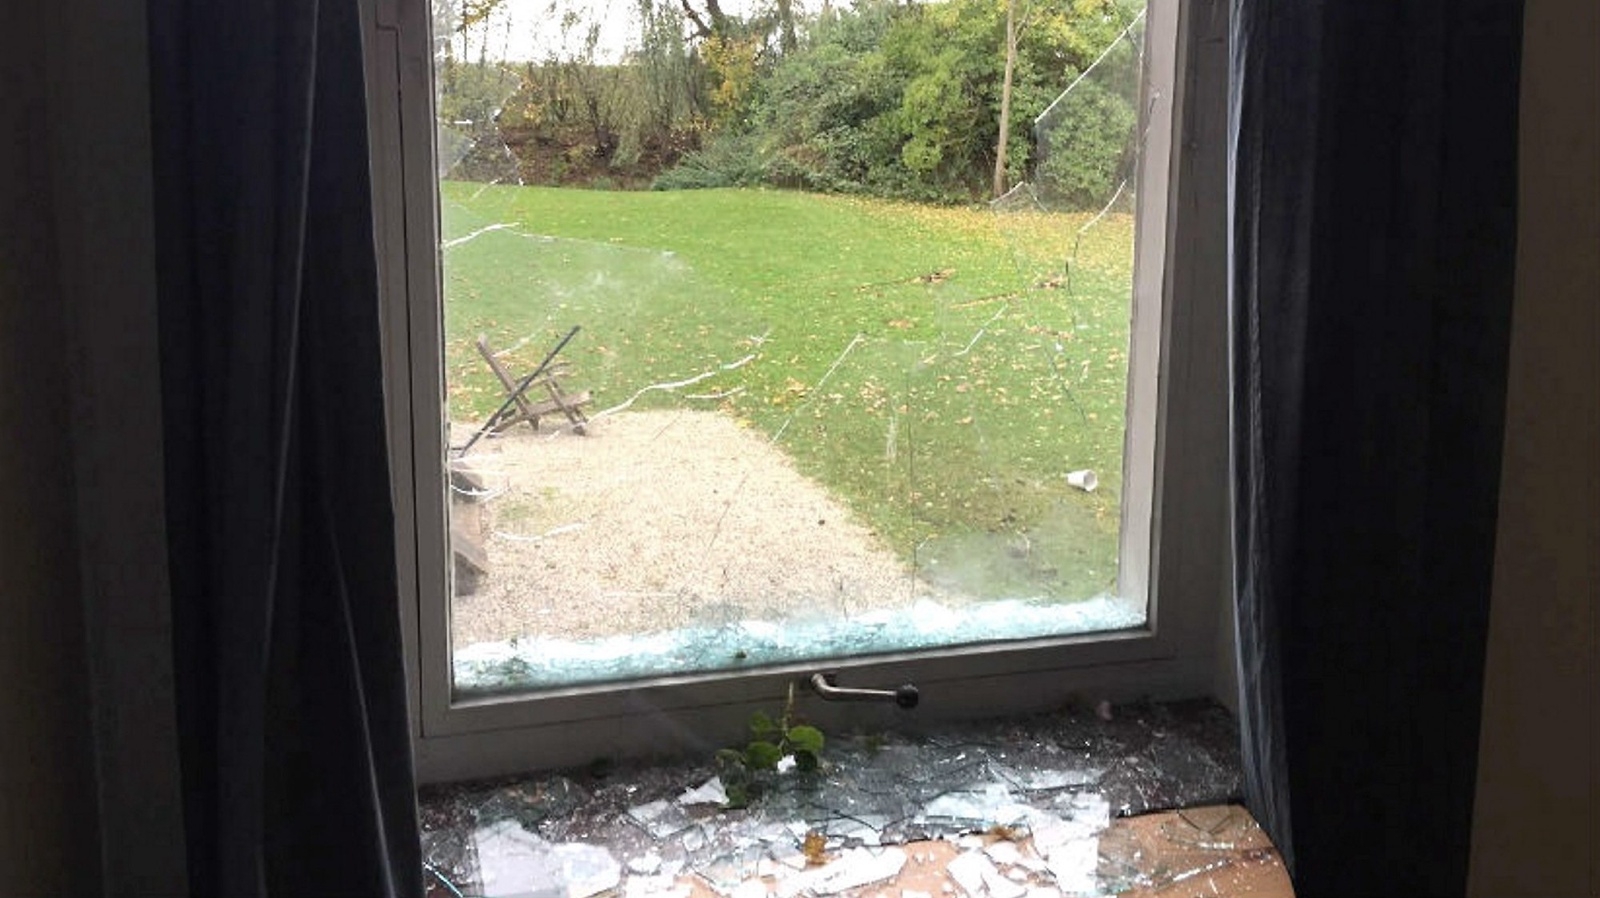 Ett 20-tal fönsterrutor krossades när den upprörde 17-åringen gick bärsärkagång med en pinne.
8Foto: Polisen